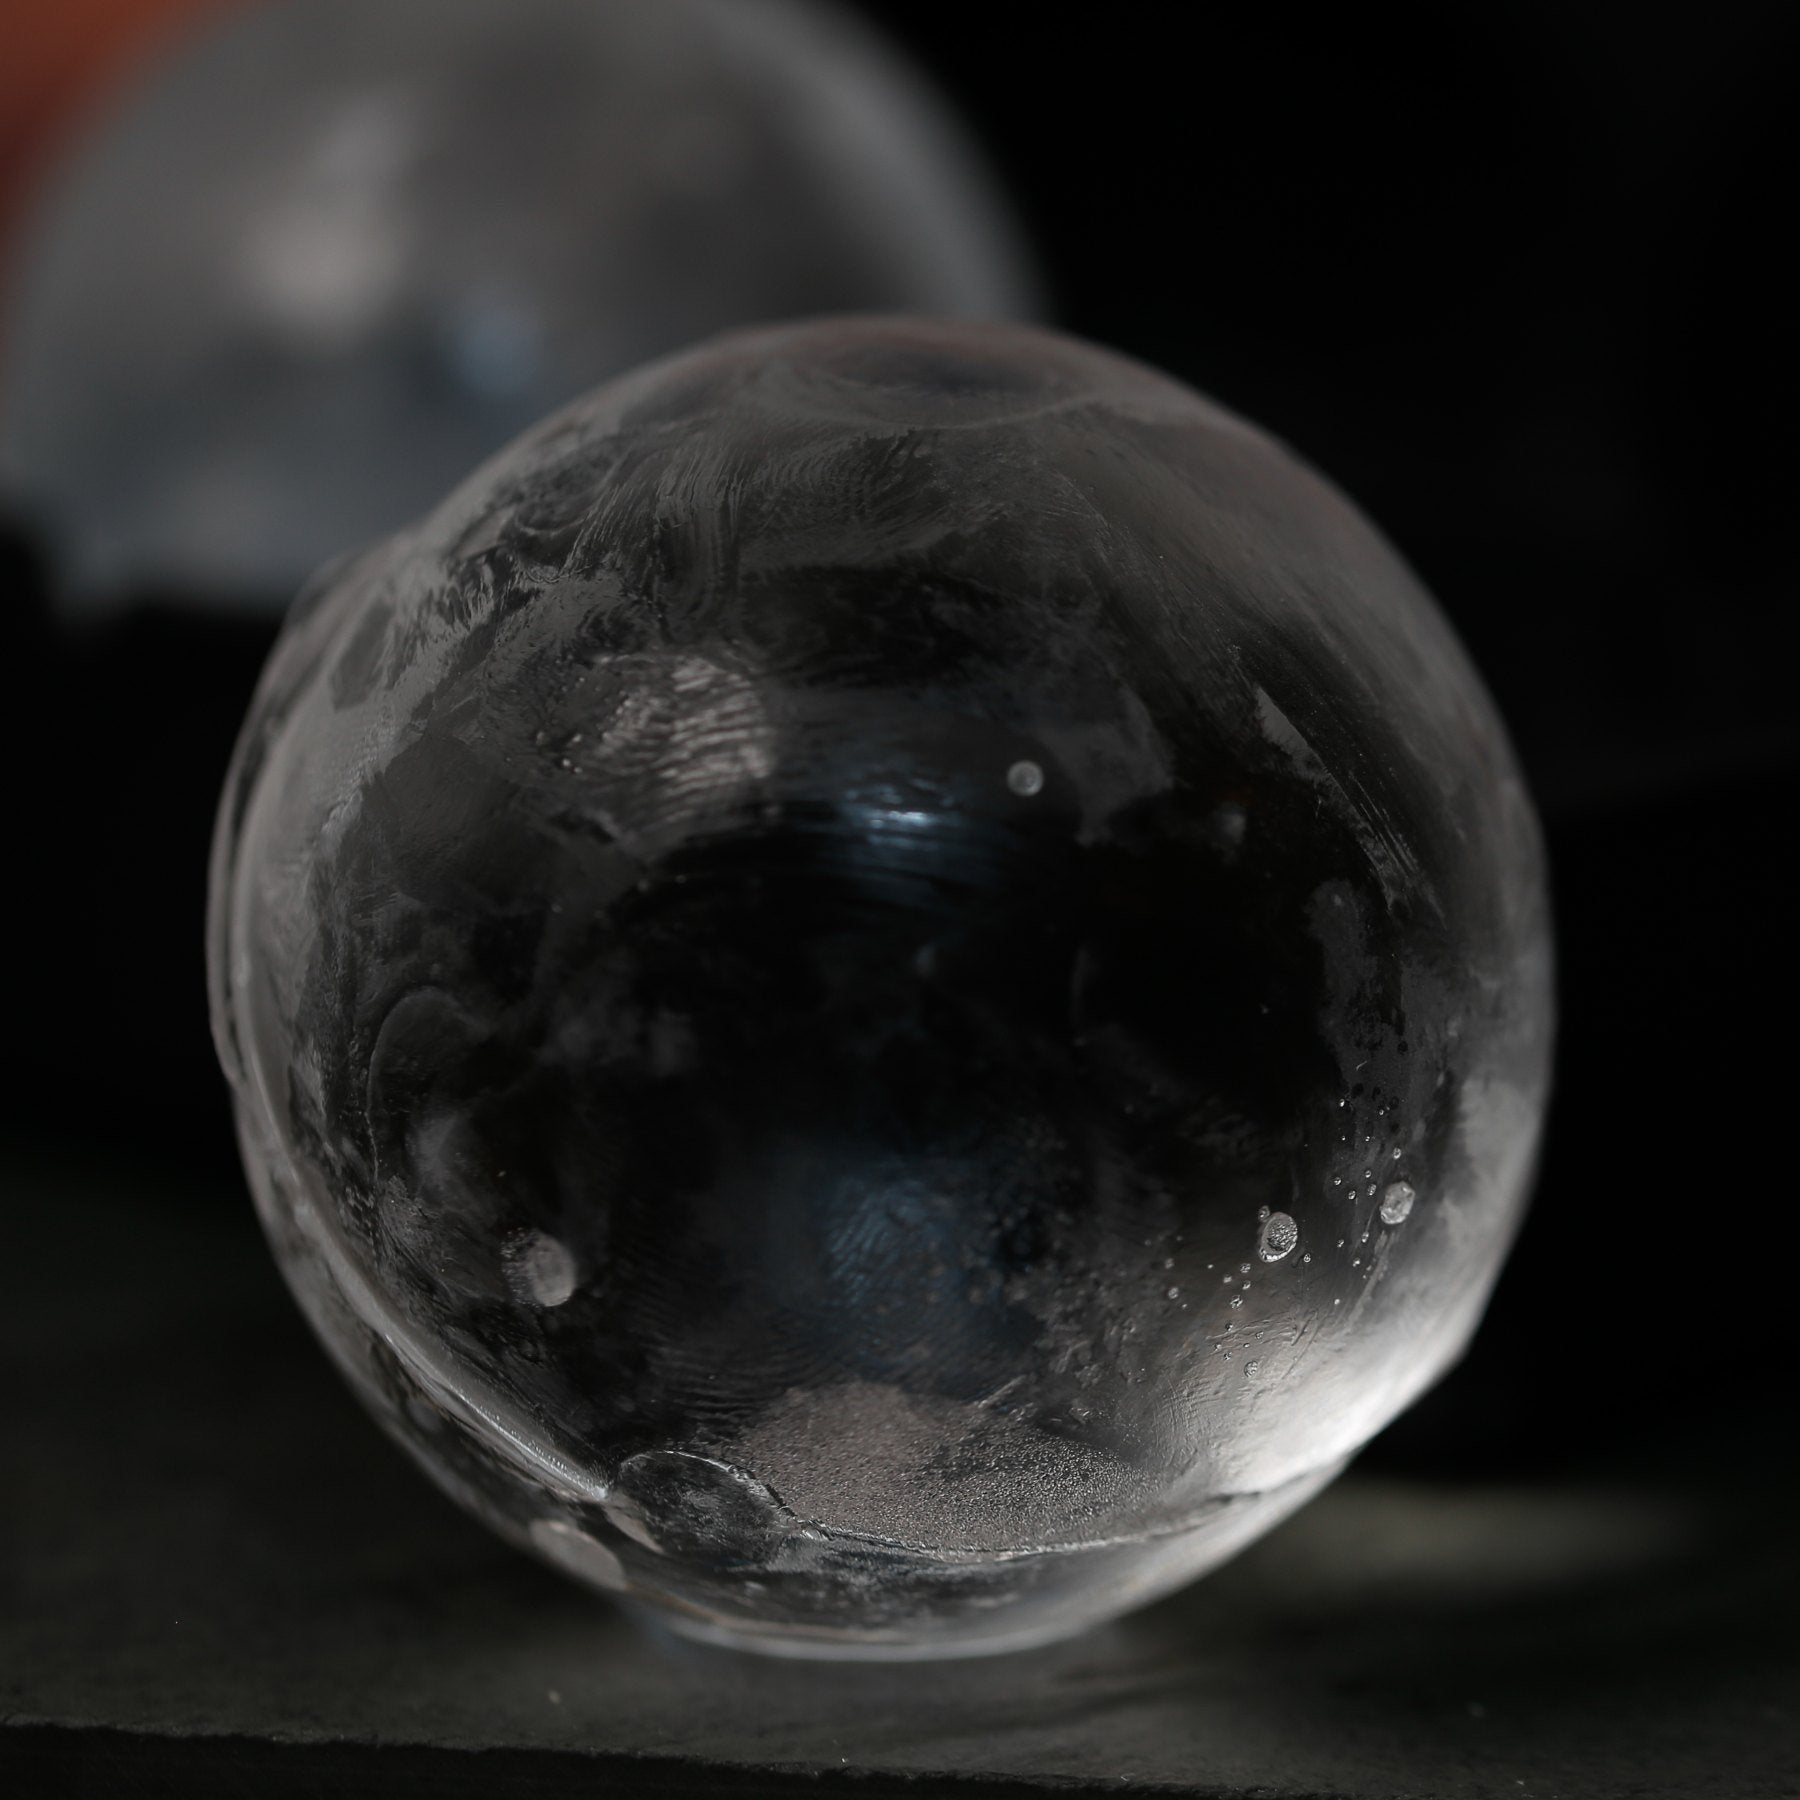 Spherical Ice Ball Maker @ Sharper Image